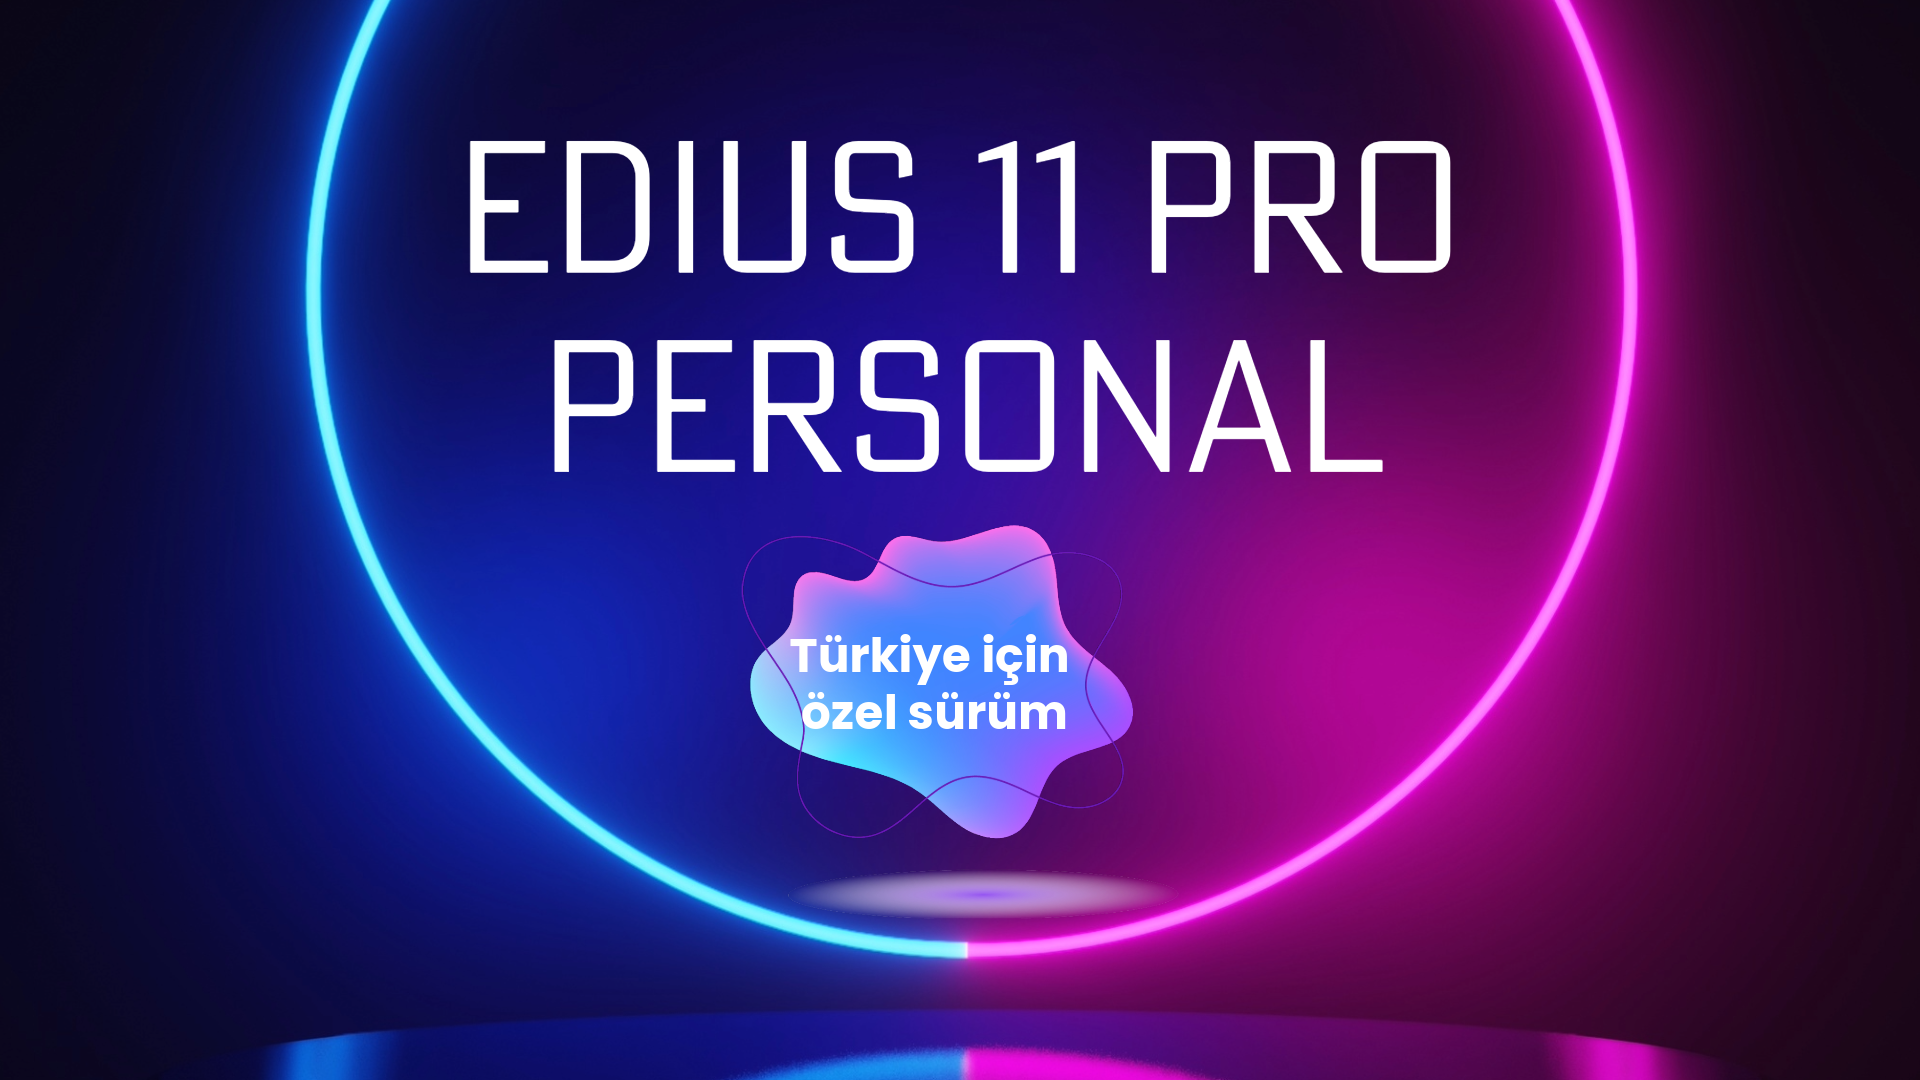 EDIUS 11 Pro Personal